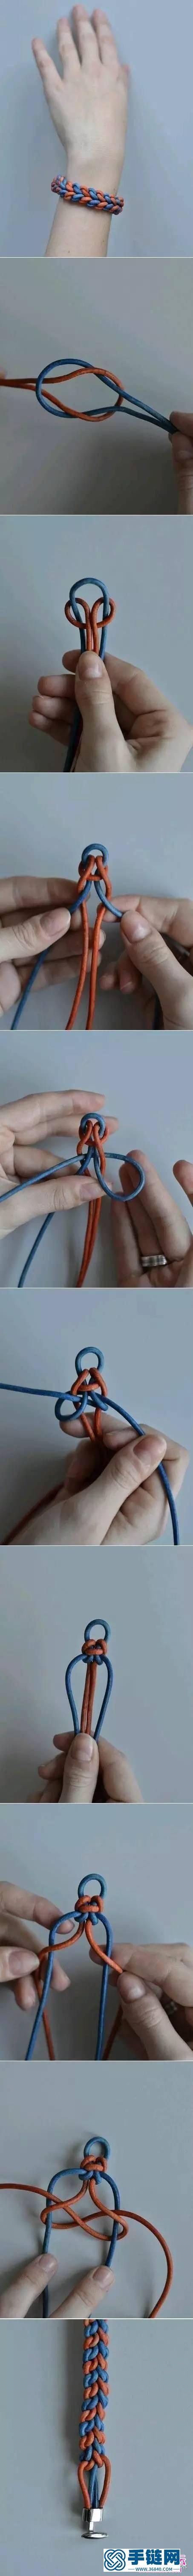 教你用绳编各种各样的手链，非常有创意哦